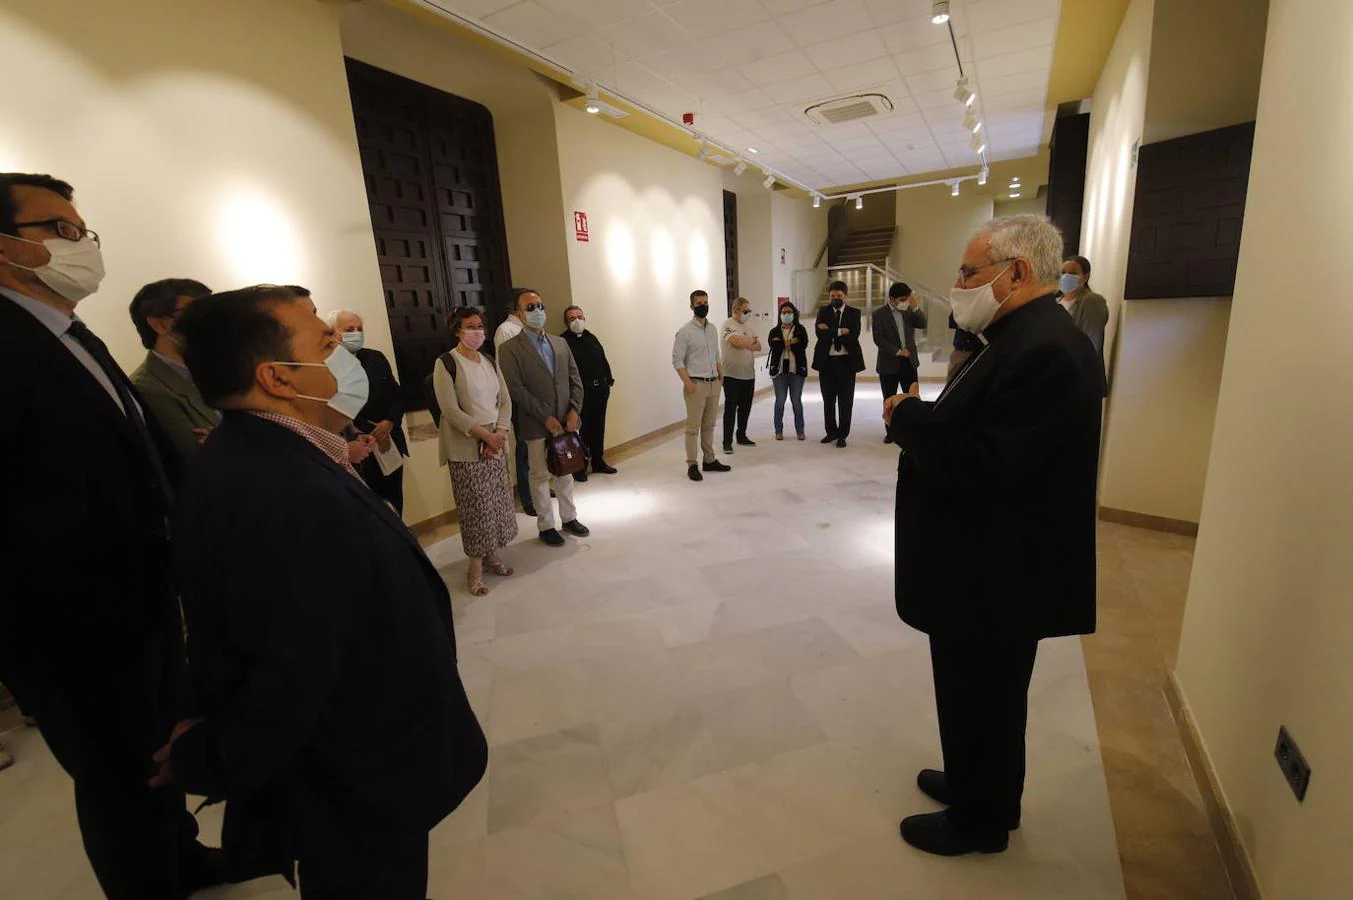 La recepción del obispo de Córdoba a los periodistas, en imágenes